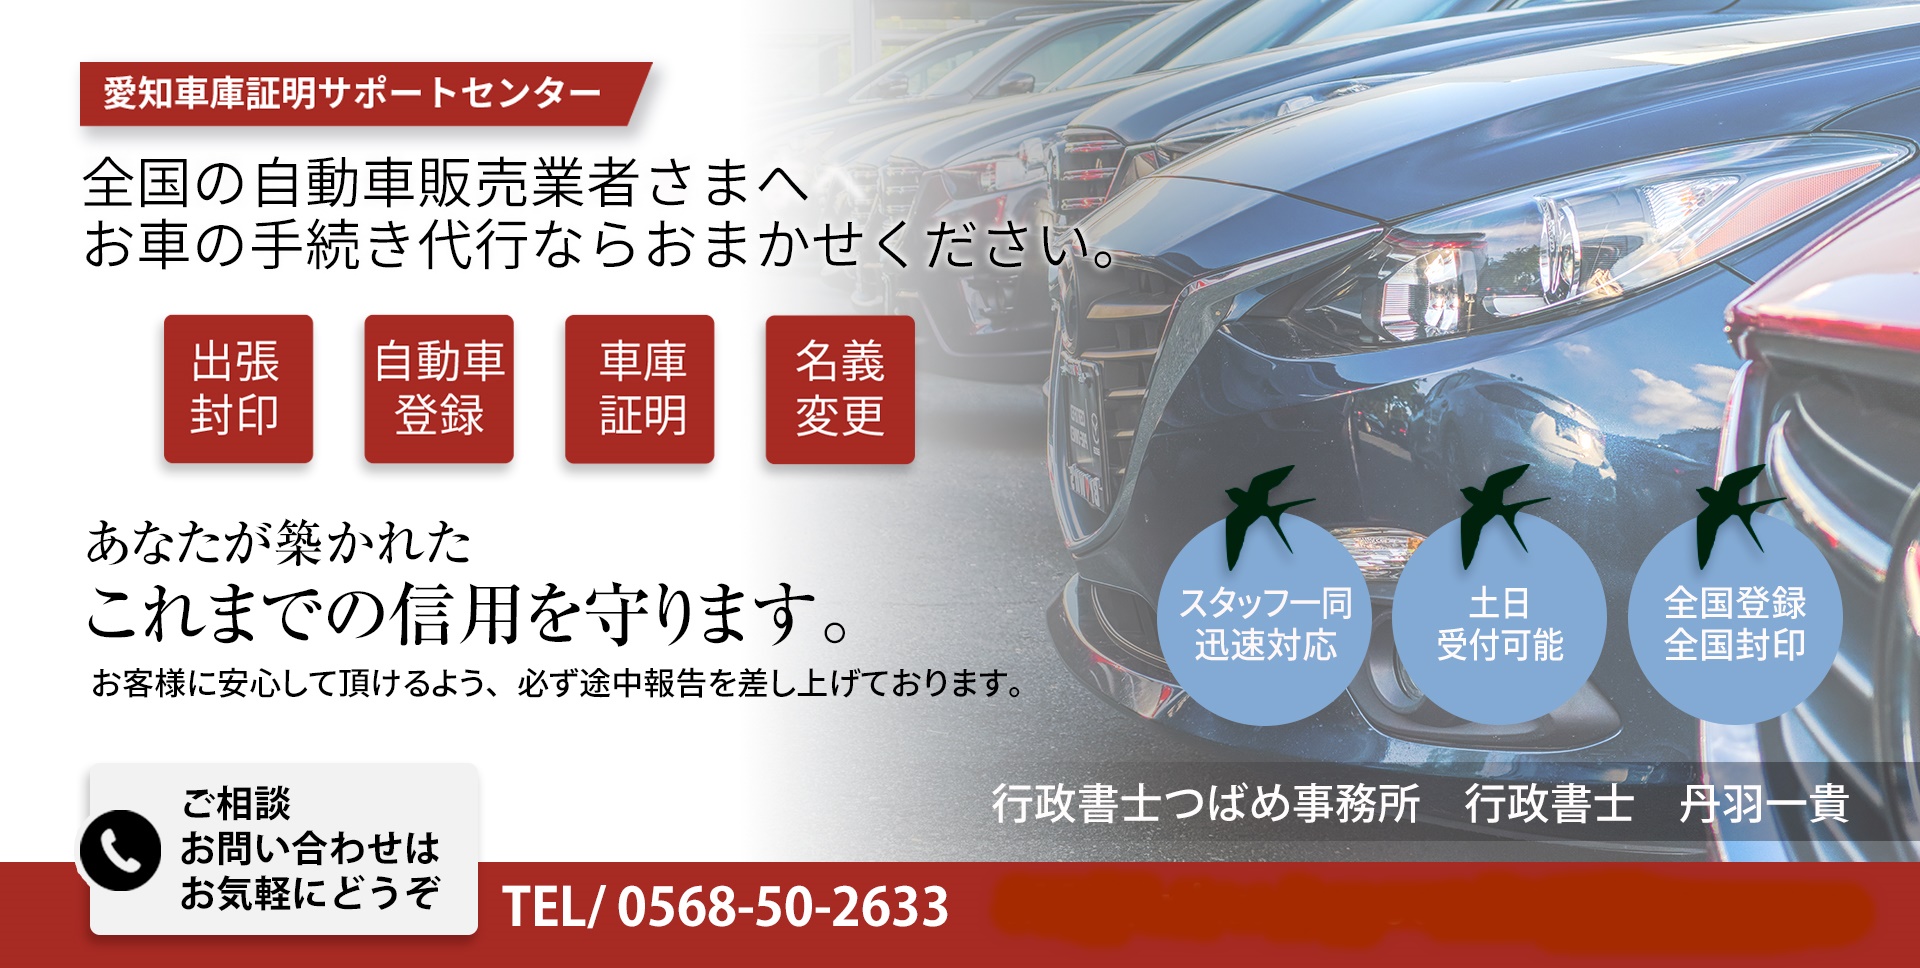 名古屋市千種区の車庫証明 | 行政書士つばめ事務所が千種警察署の車庫証明を代行します